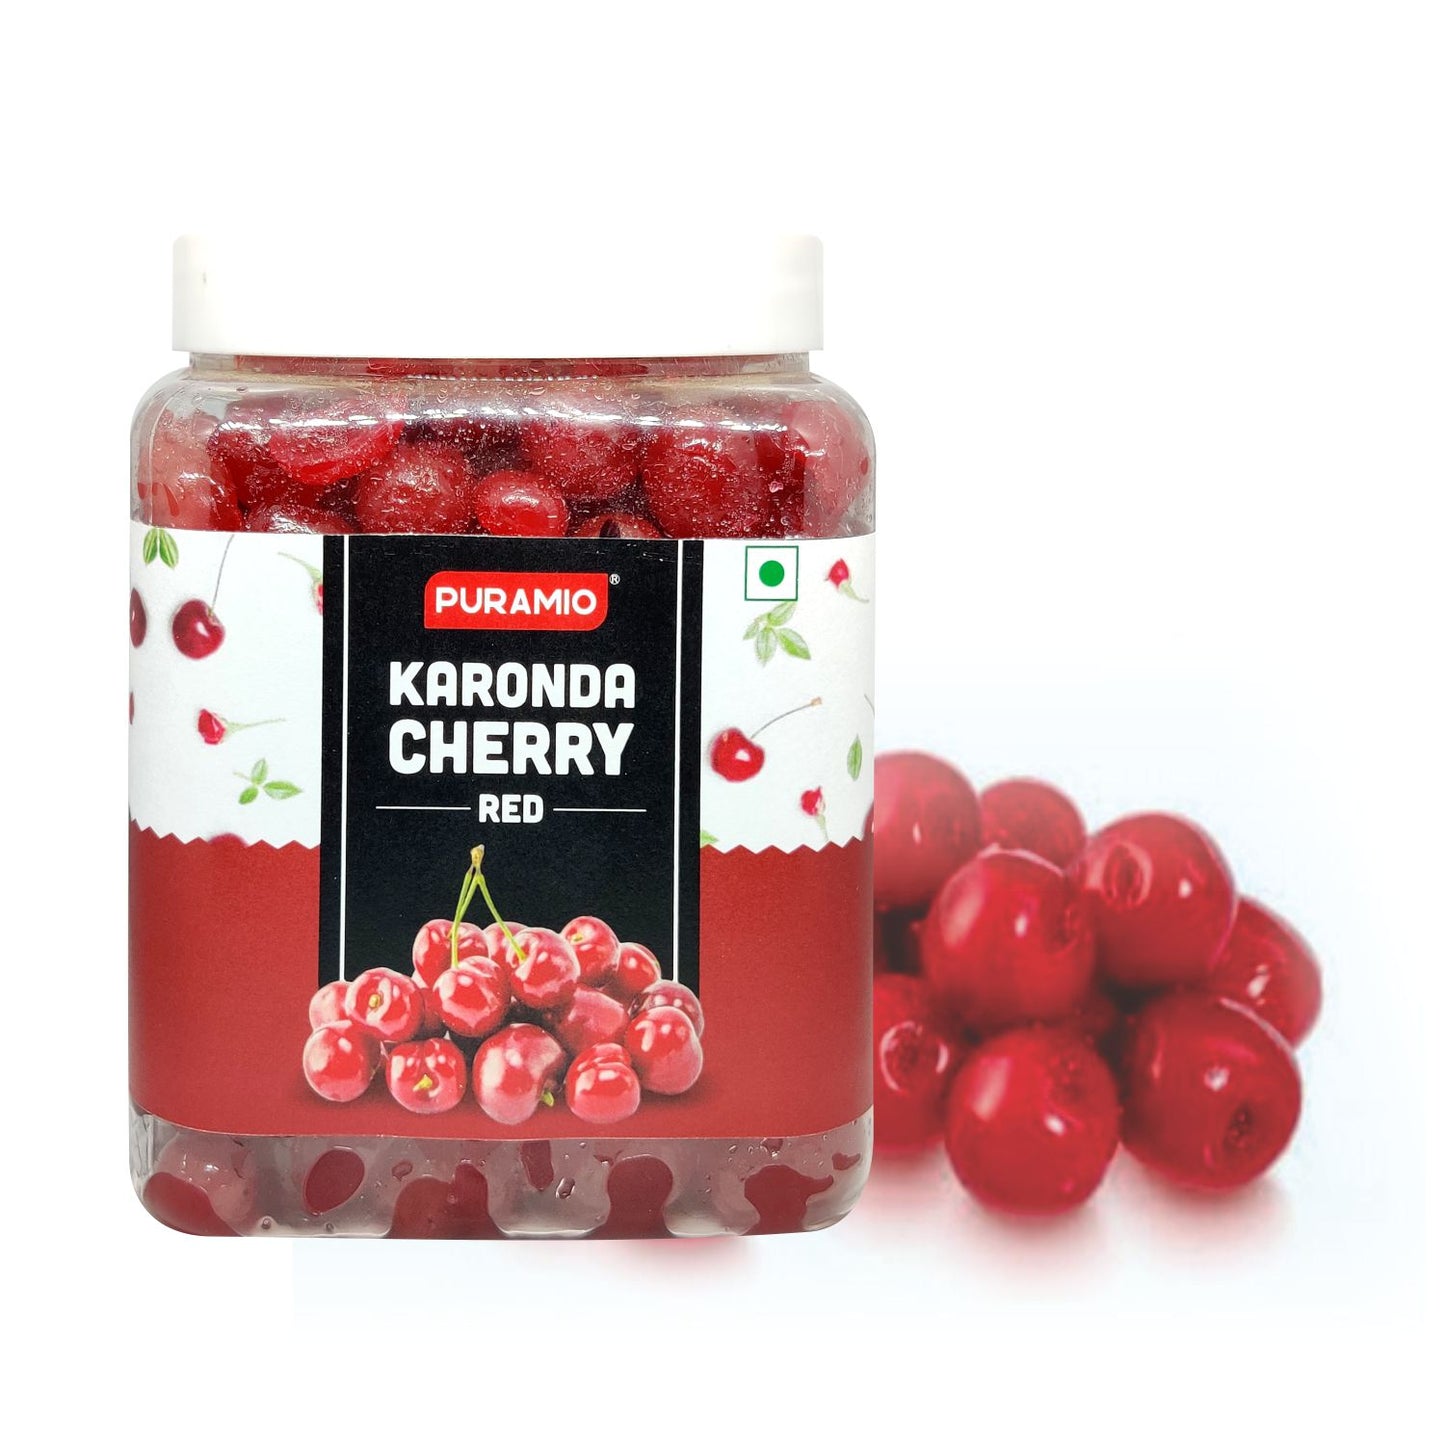 Puramio Karonda Cherry - Red , 900g